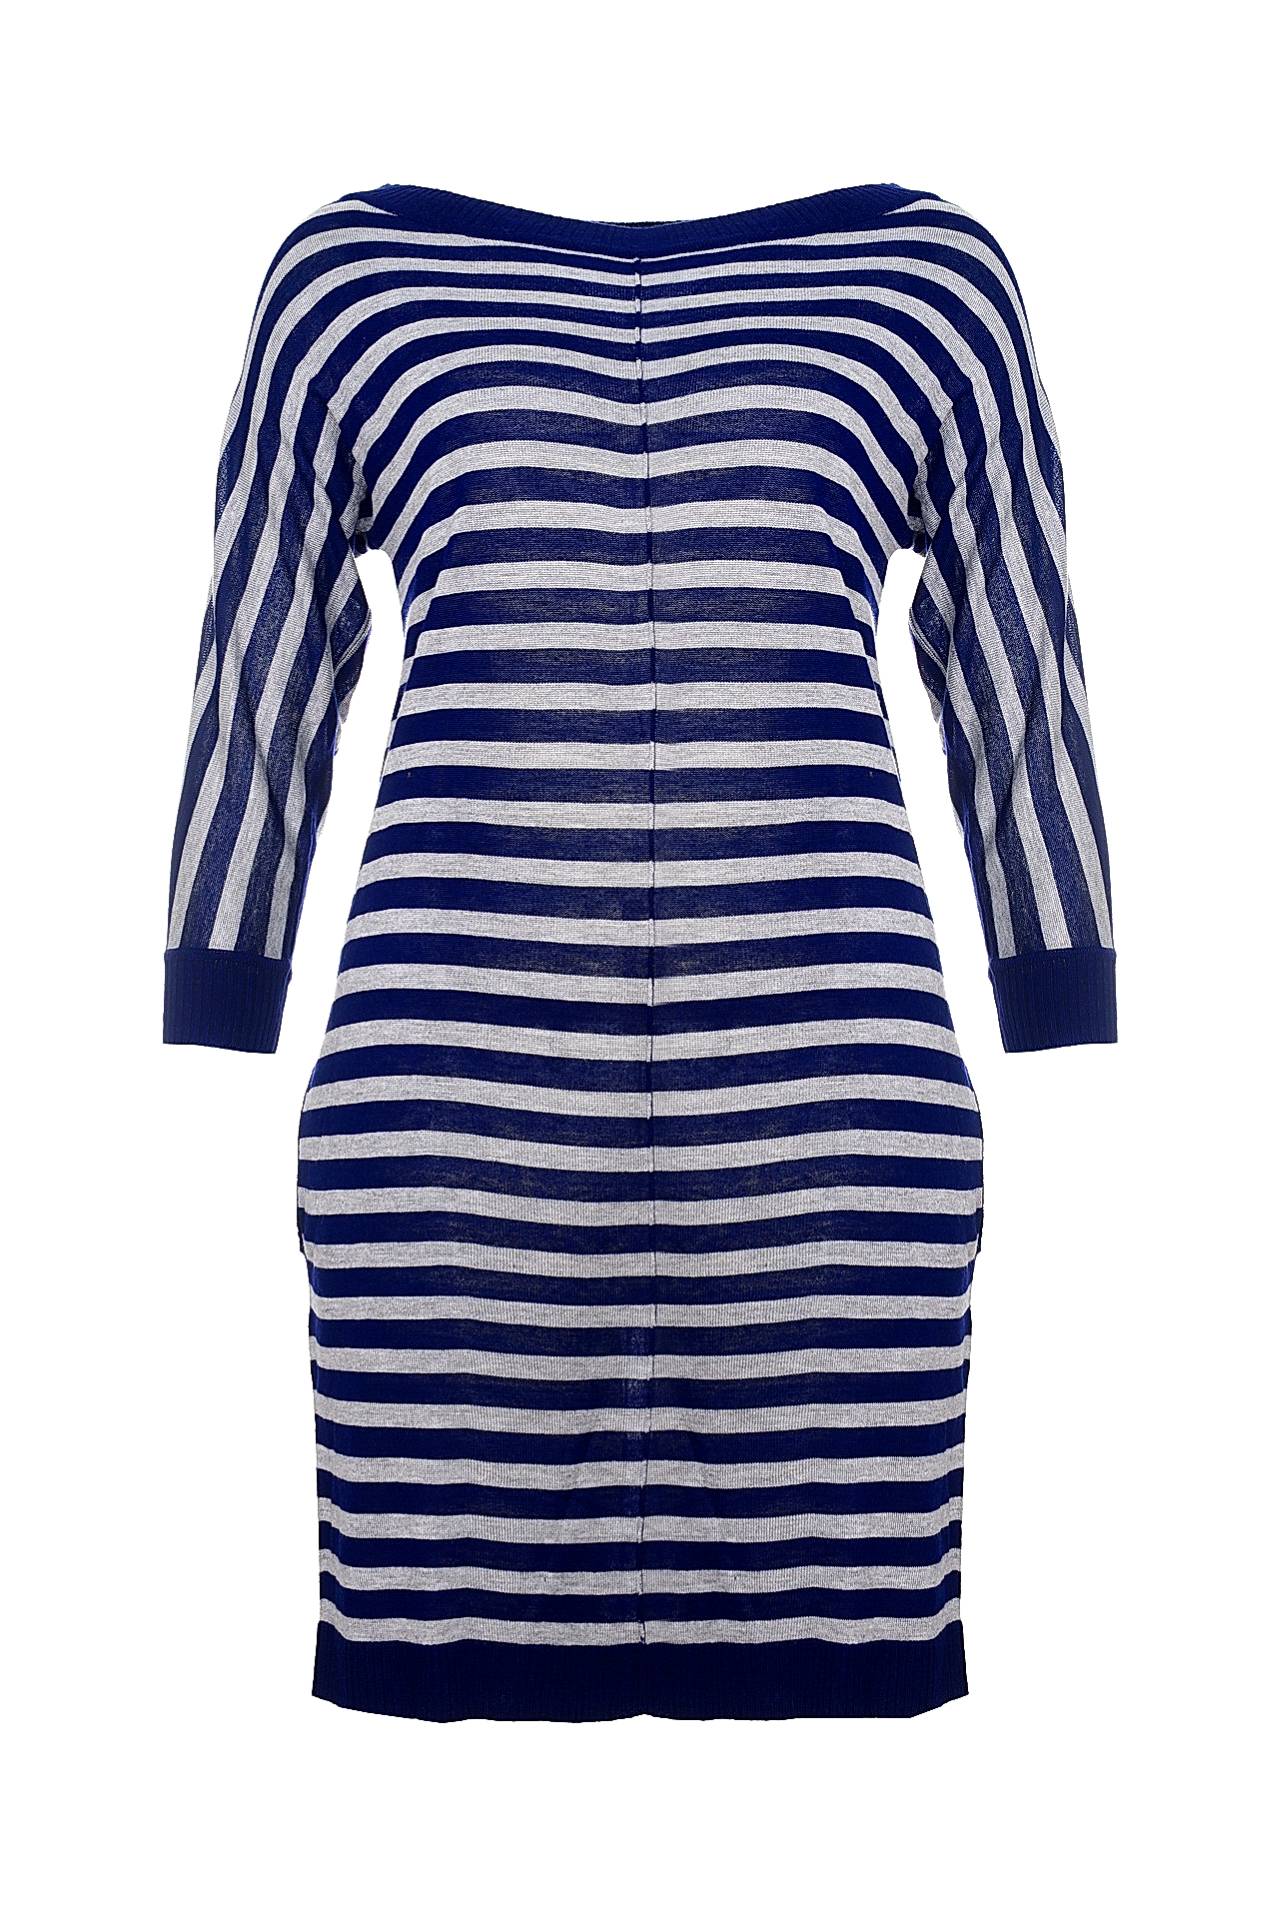 Одежда женская Платье LETICIA MILANO (F123011/15.1). Купить за 11450 руб.